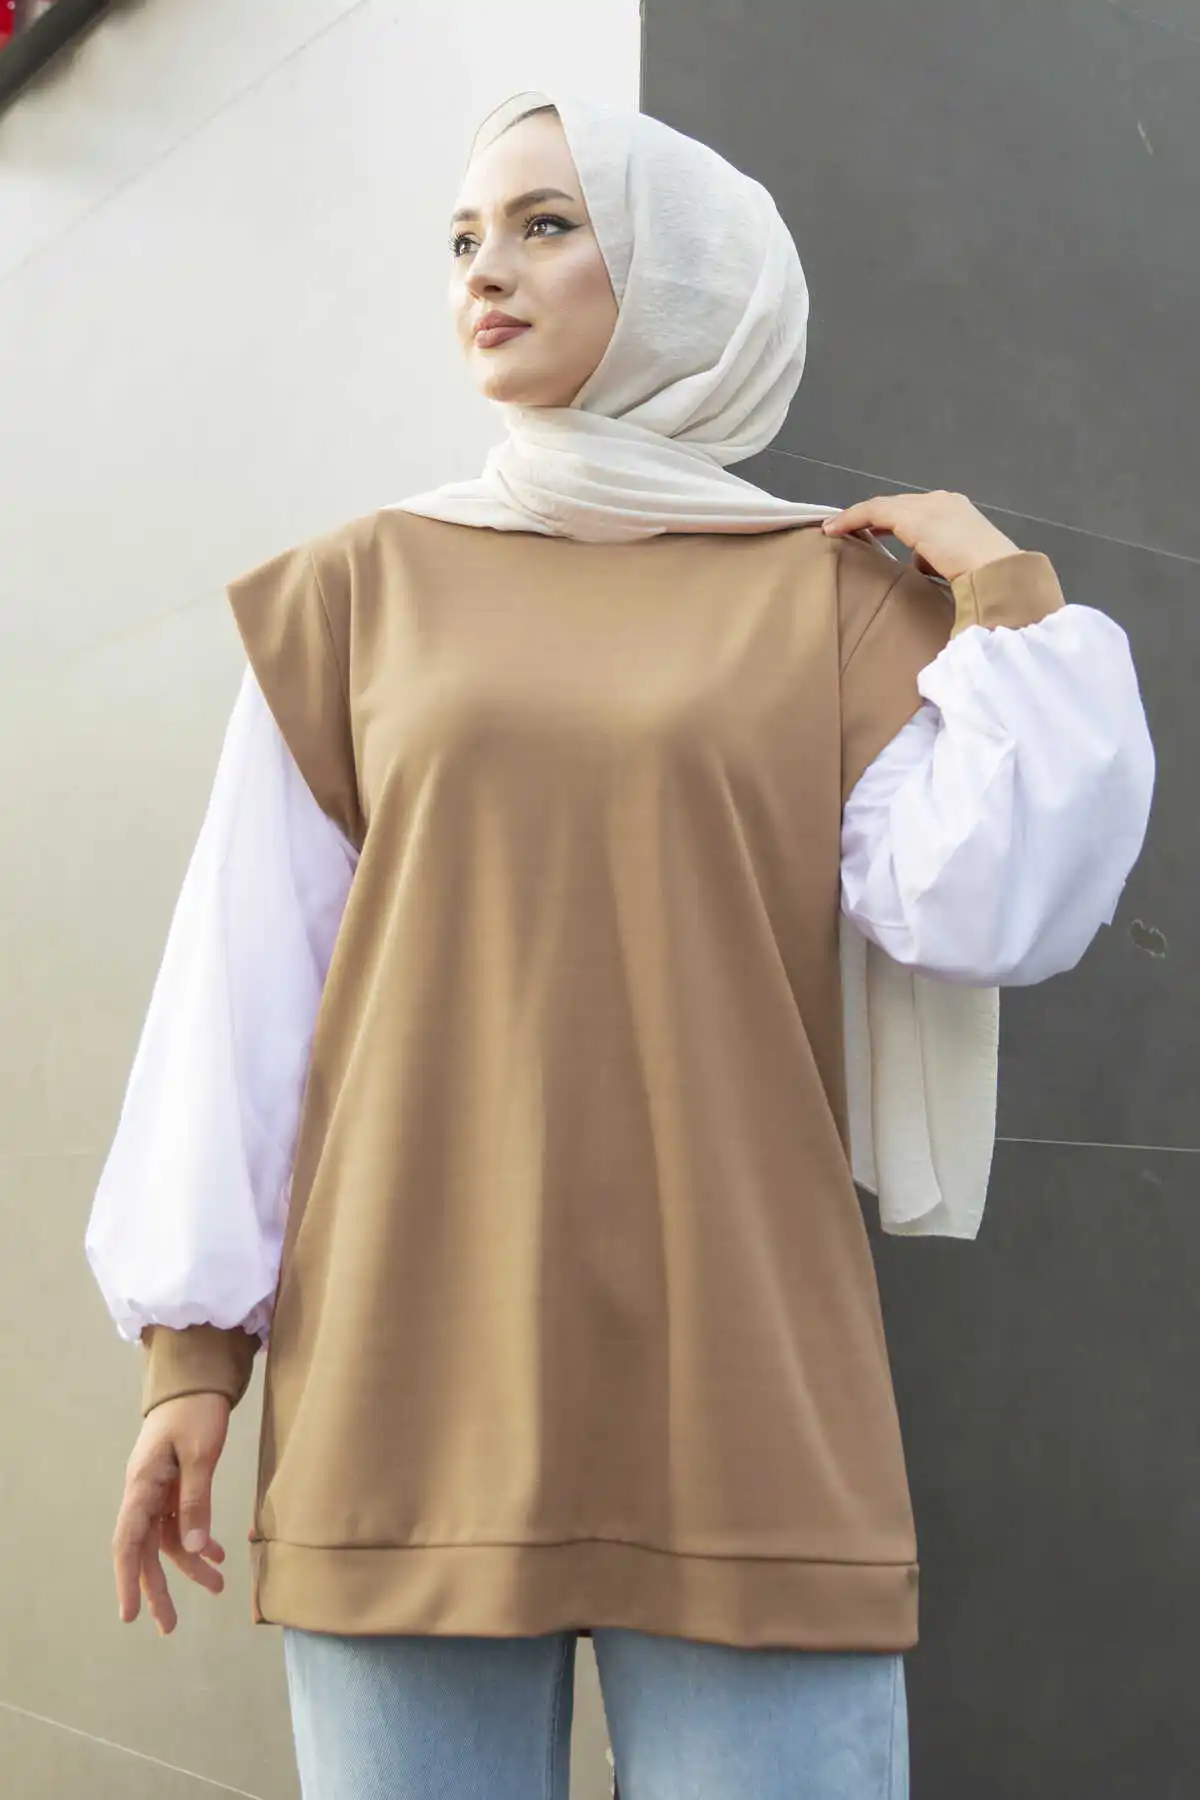 Рубашка с длинным рукавом, модное платье-хиджаб в турецком мусульманском стиле, одежда в мусульманском стиле, Дубай, эксстанбутиол, амбул 2021